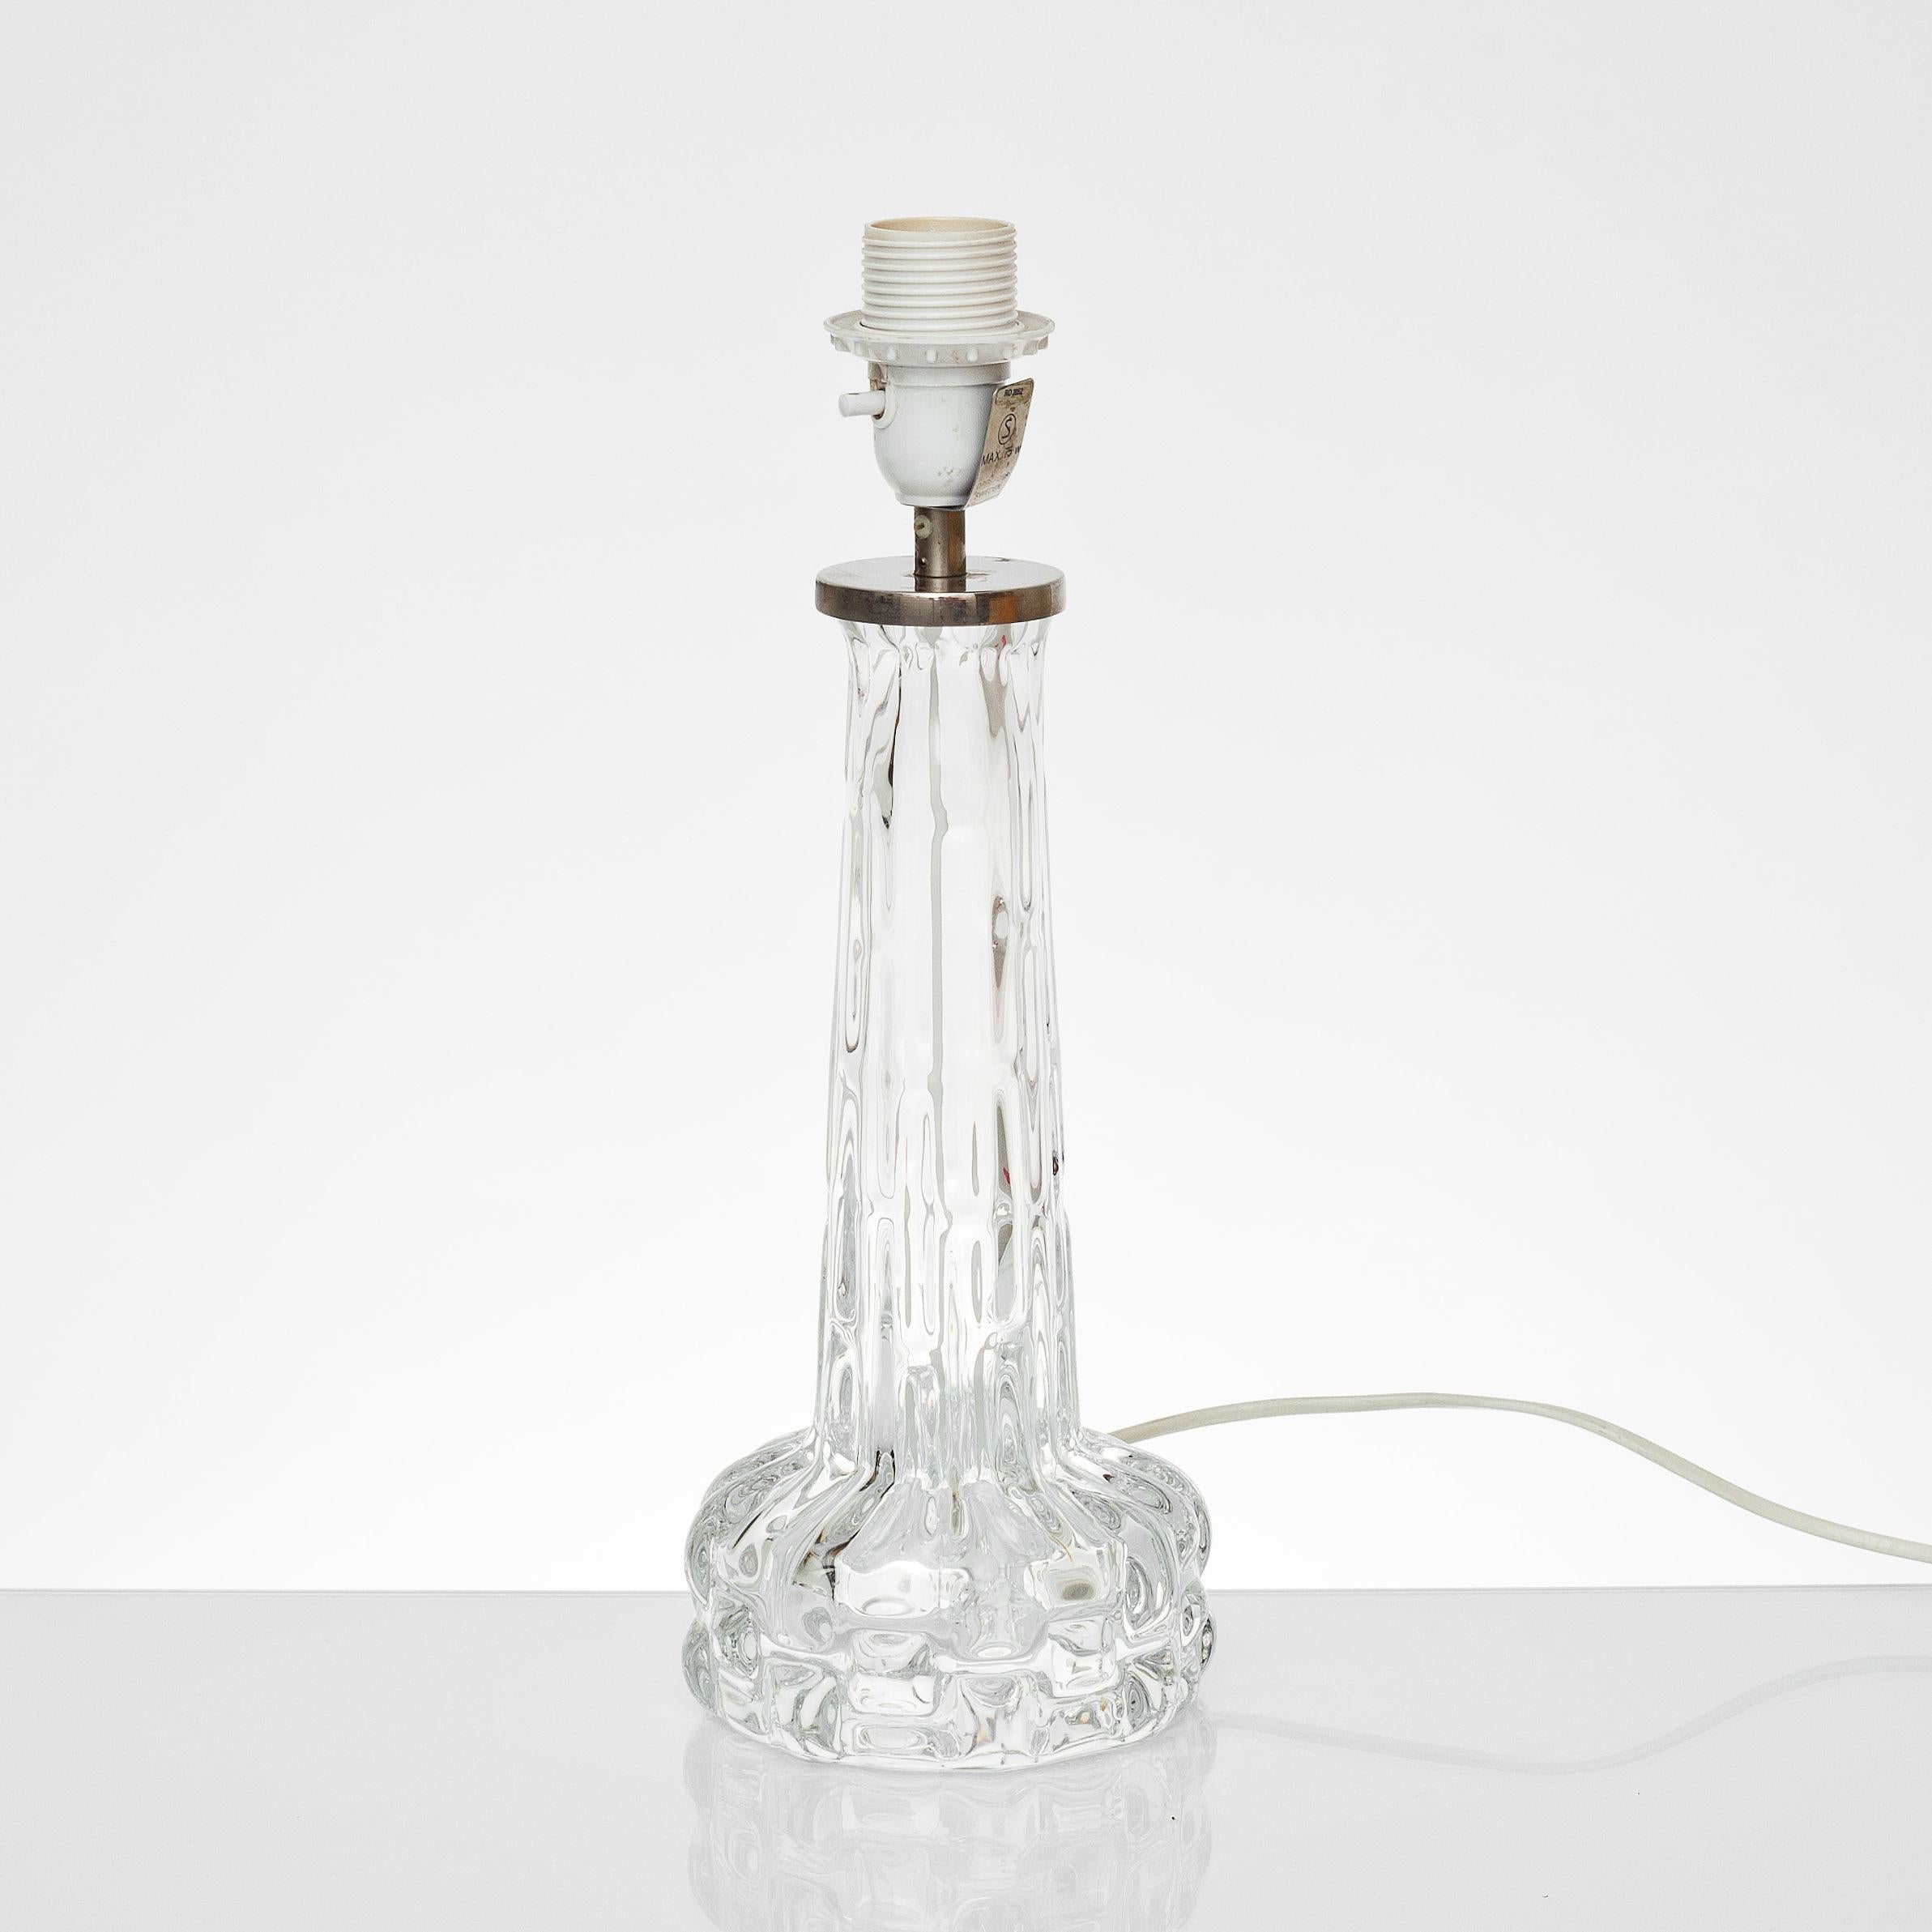 LAMPE DE TABLE conçue par Carl Fagerlund pour Orrefors. Milieu du 20e siècle.
Base de lampe en verre. Hauteur 38 y compris la base de la lampe. Avec hauteur d'abat-jour 66. env.
Bon état